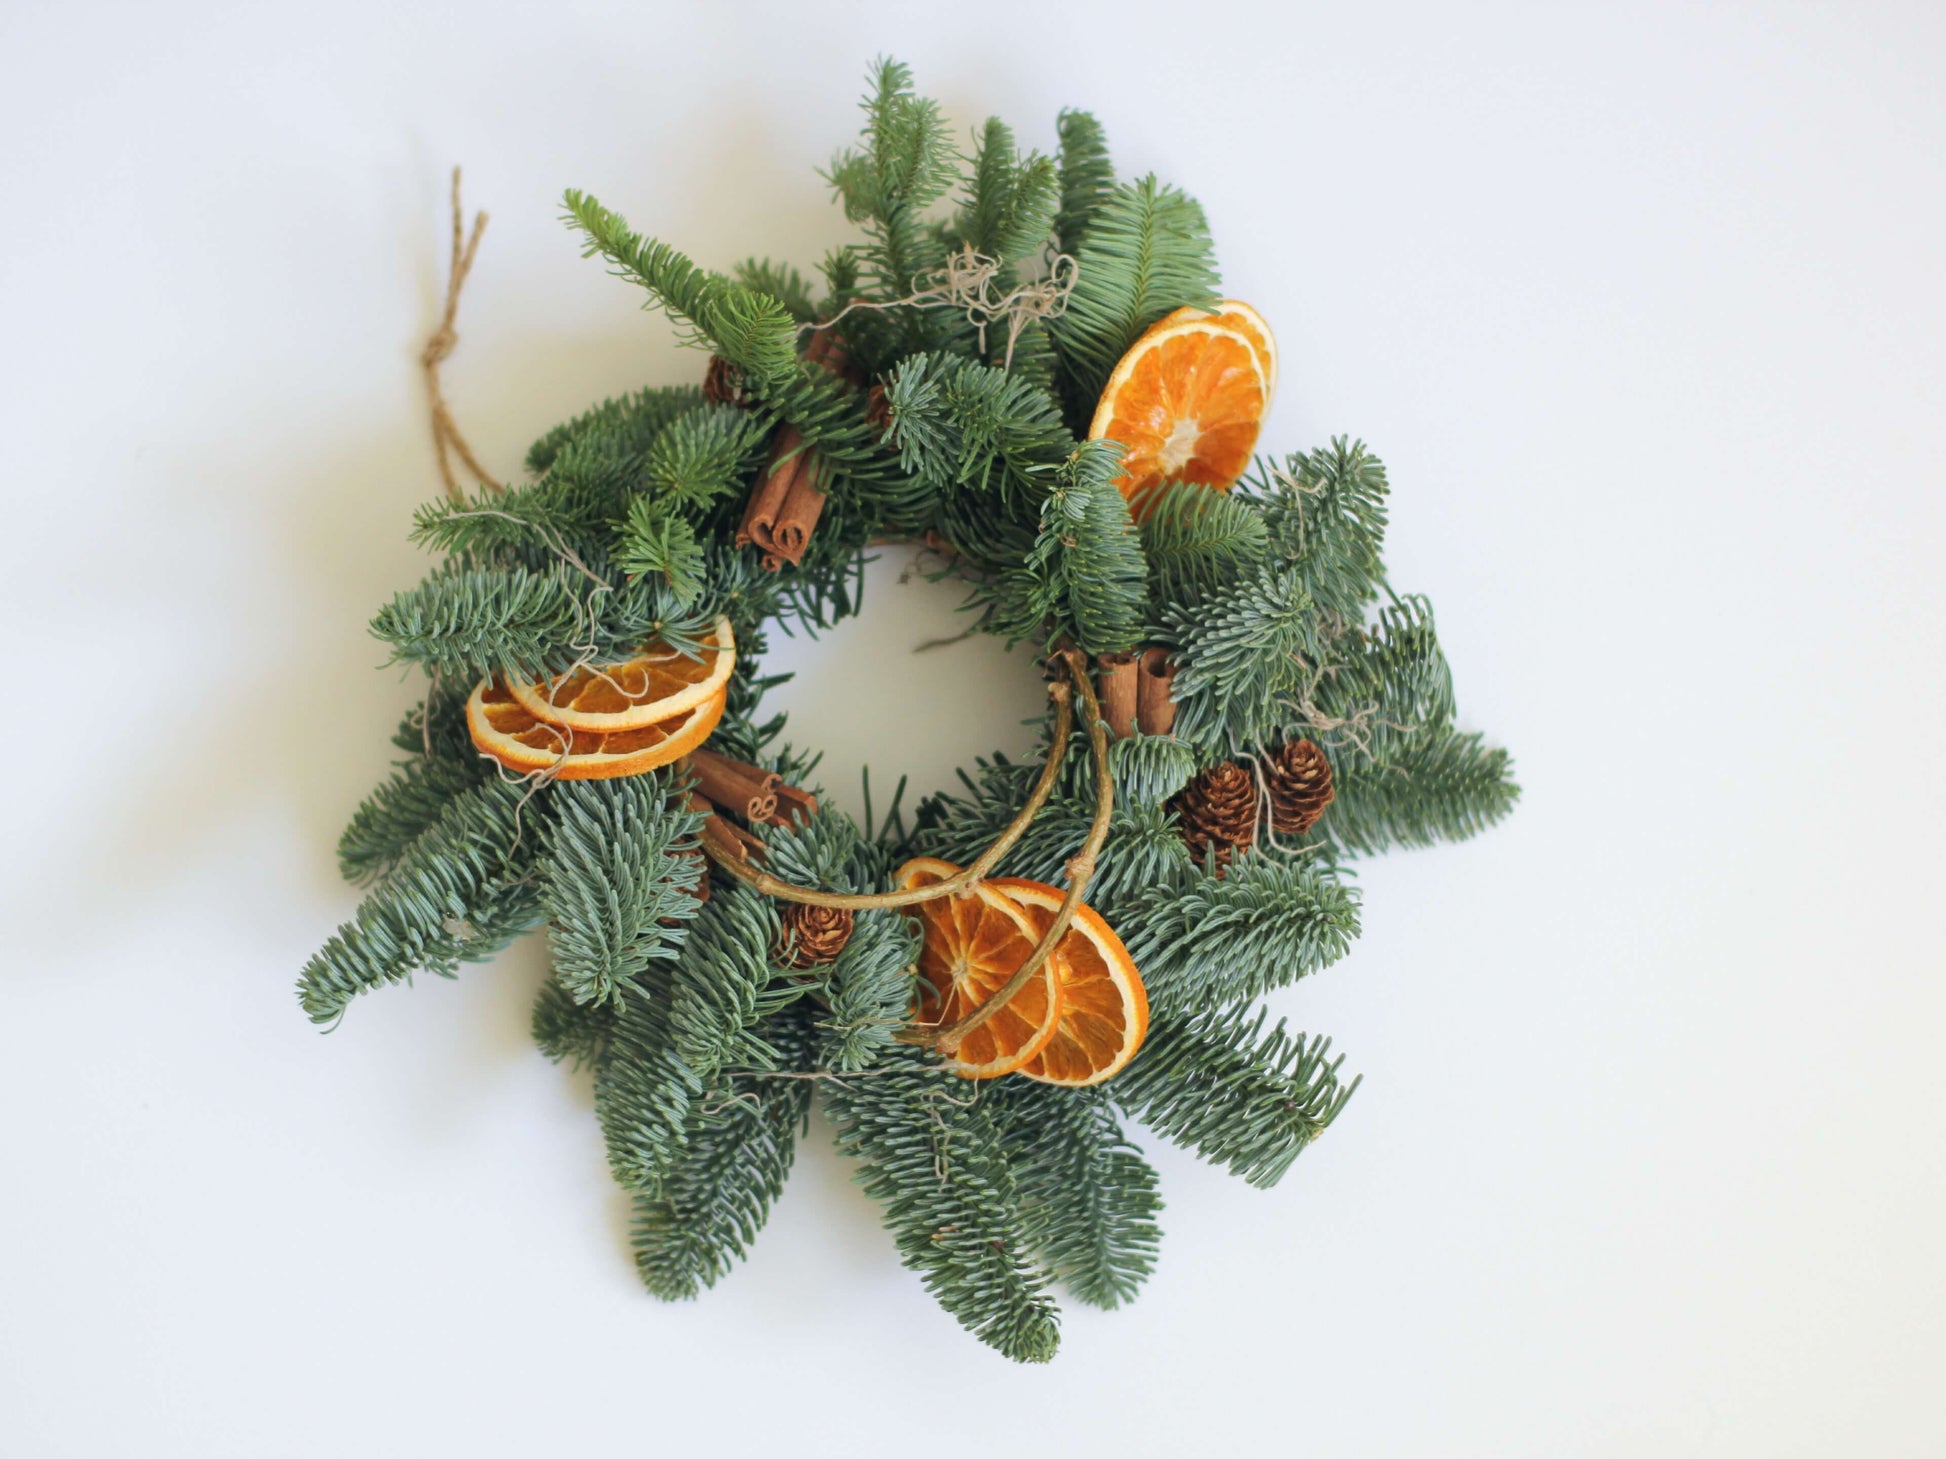 Coroniță naturală festivă decorată cu scorțișoară, portocale și conuri